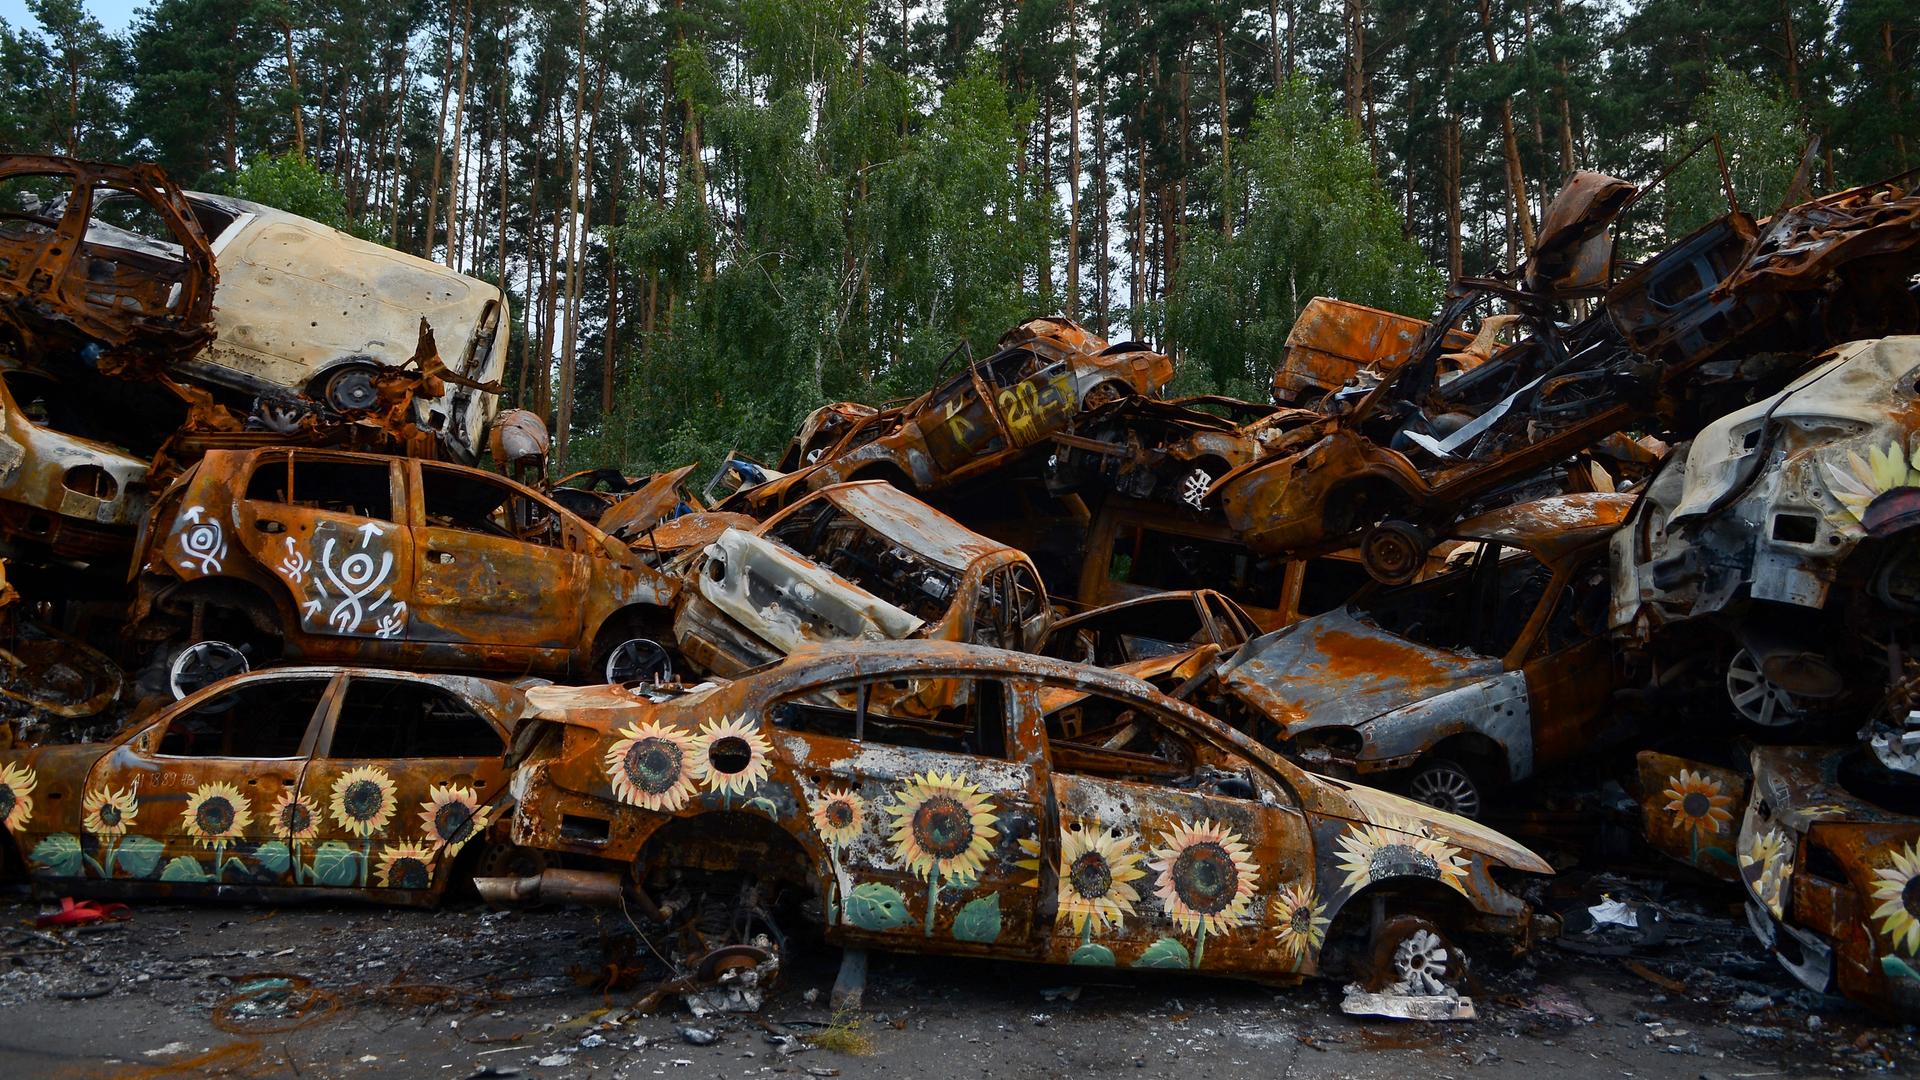 Sonnenblumen sind auf verschrottete rostende Autos in Kiew gemalt.